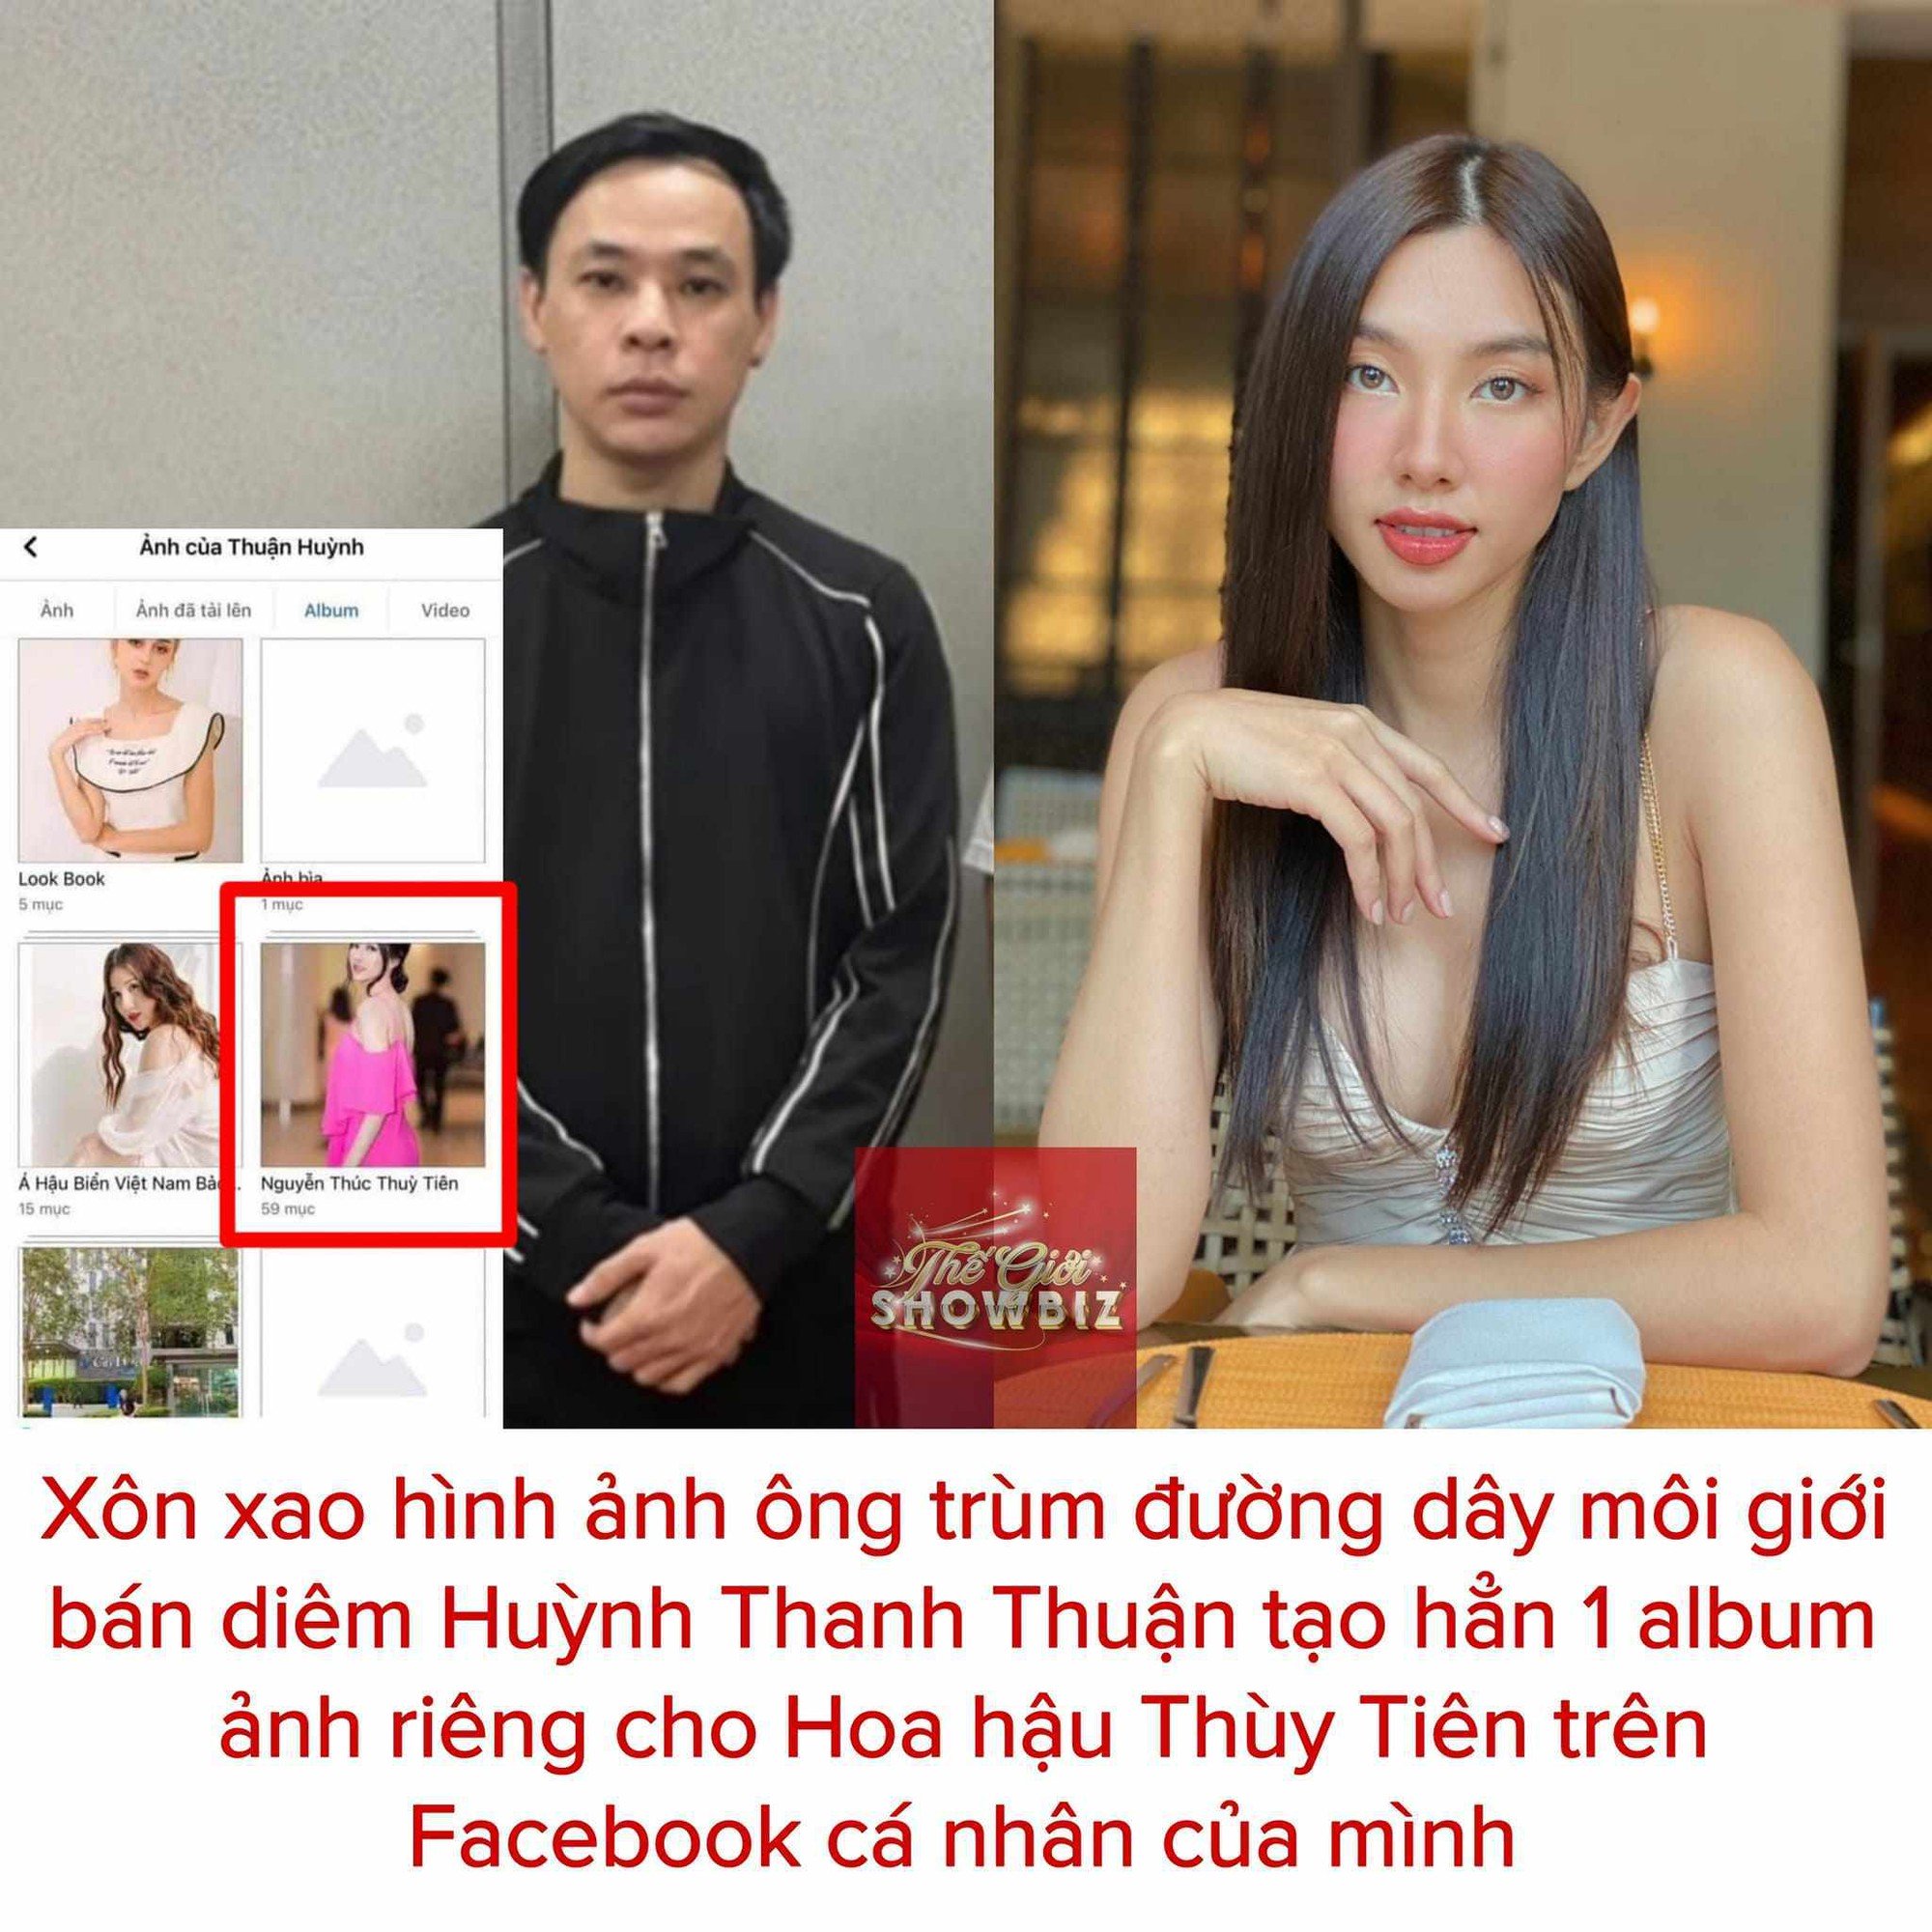 Vụ Hoa hậu bán dâm bị bắt, cư dân mạng phát hiện tú ông” Huỳnh Thanh Thuận thường xuyên tương tác với Thùy Tiên-1